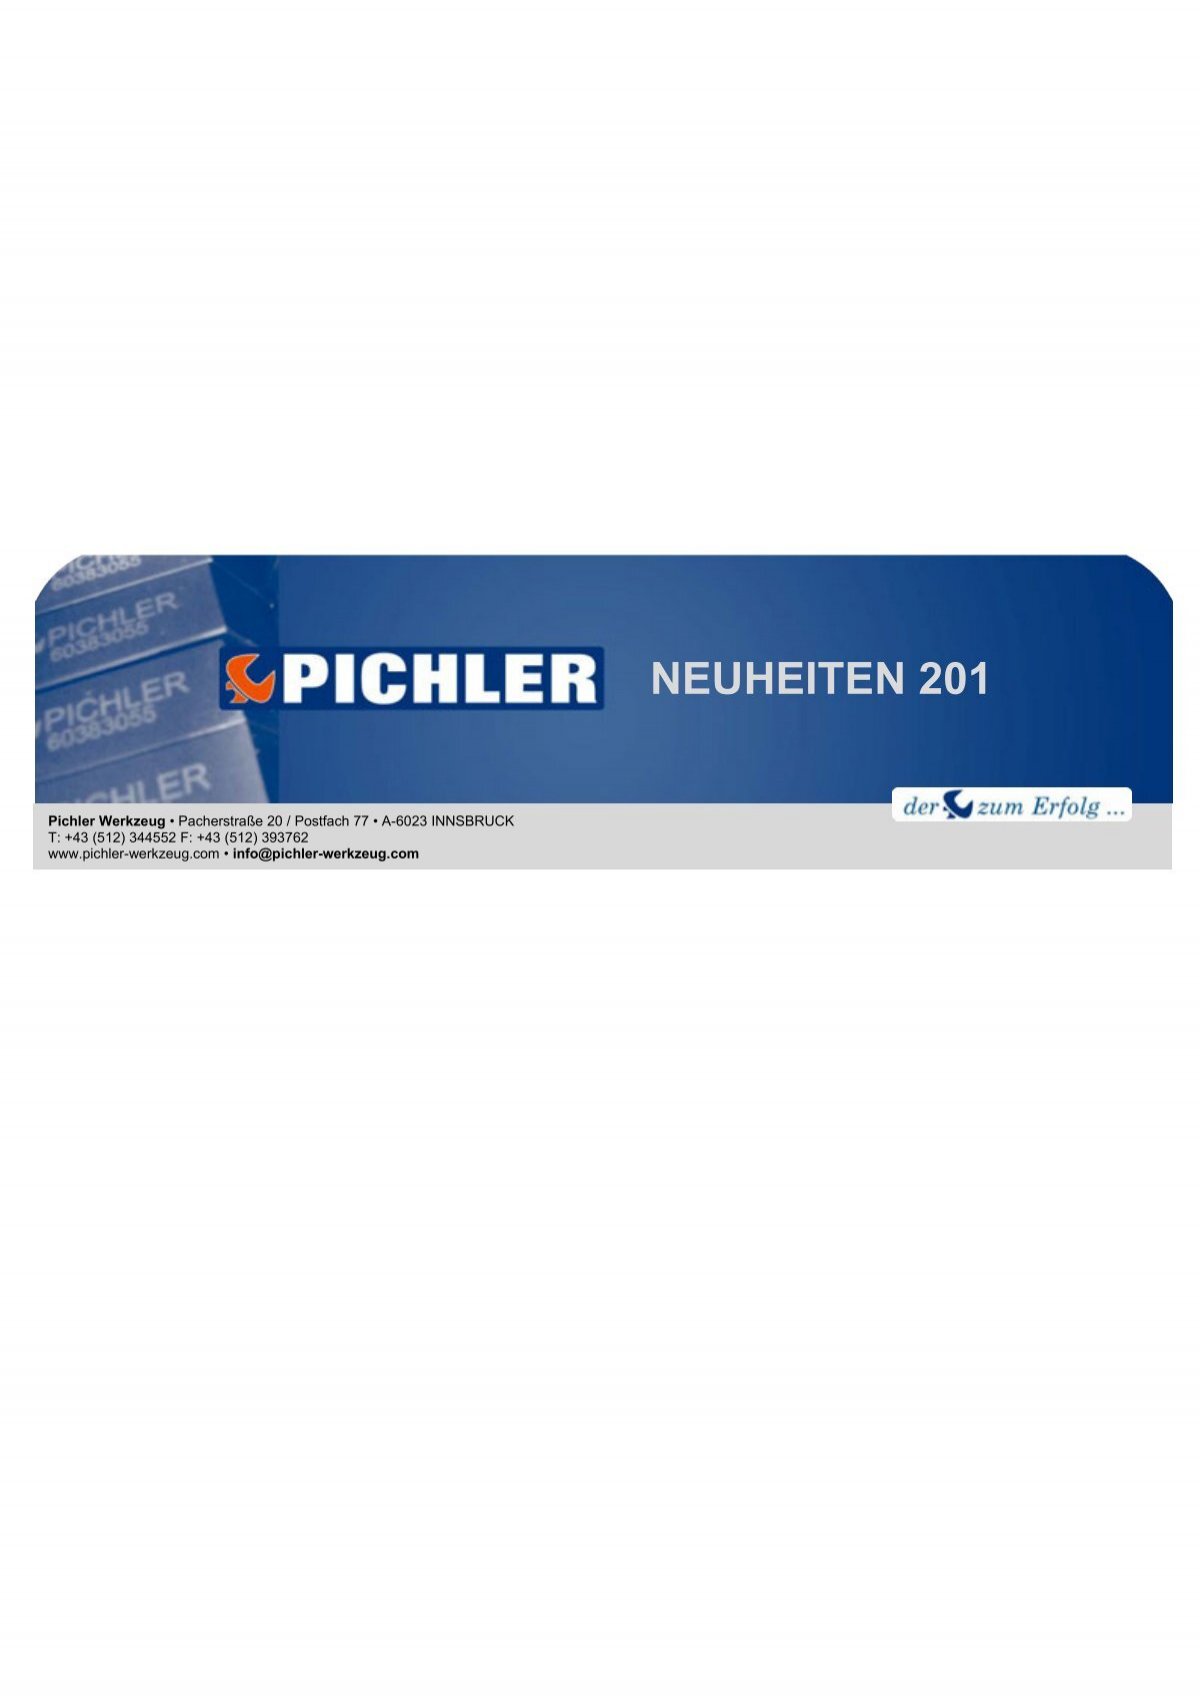 neuheiten 2012 01 - Pichler Werkzeug